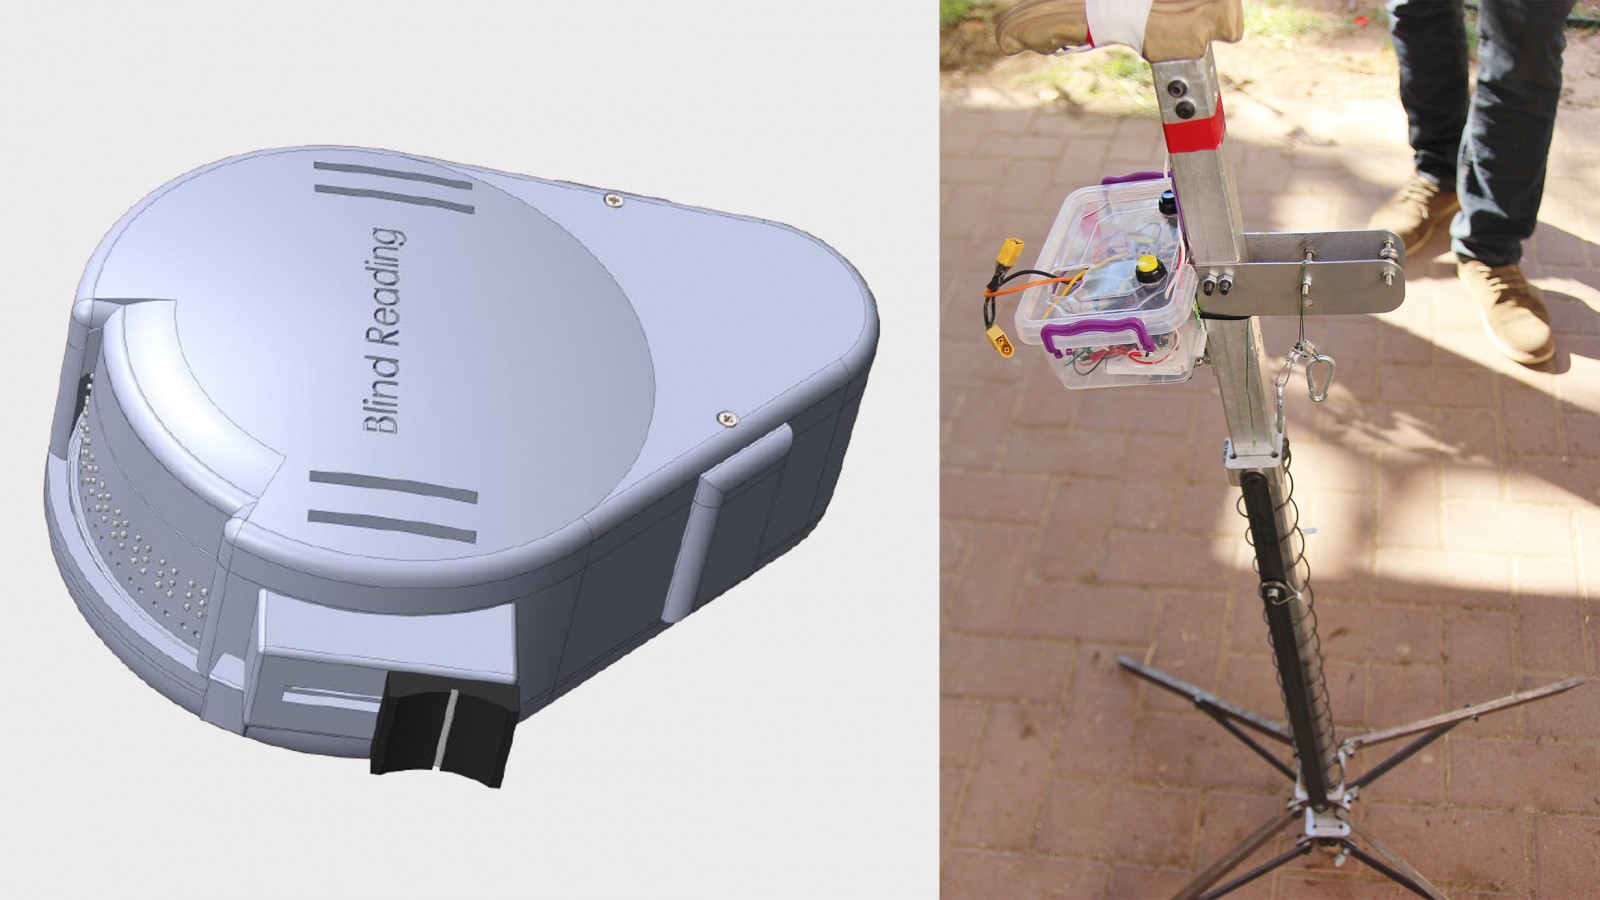 מימין: מקל הליכה מייצב, מתקן קריאה לעוורים (תמונות: דוברות אוניברסיטת אריאל).